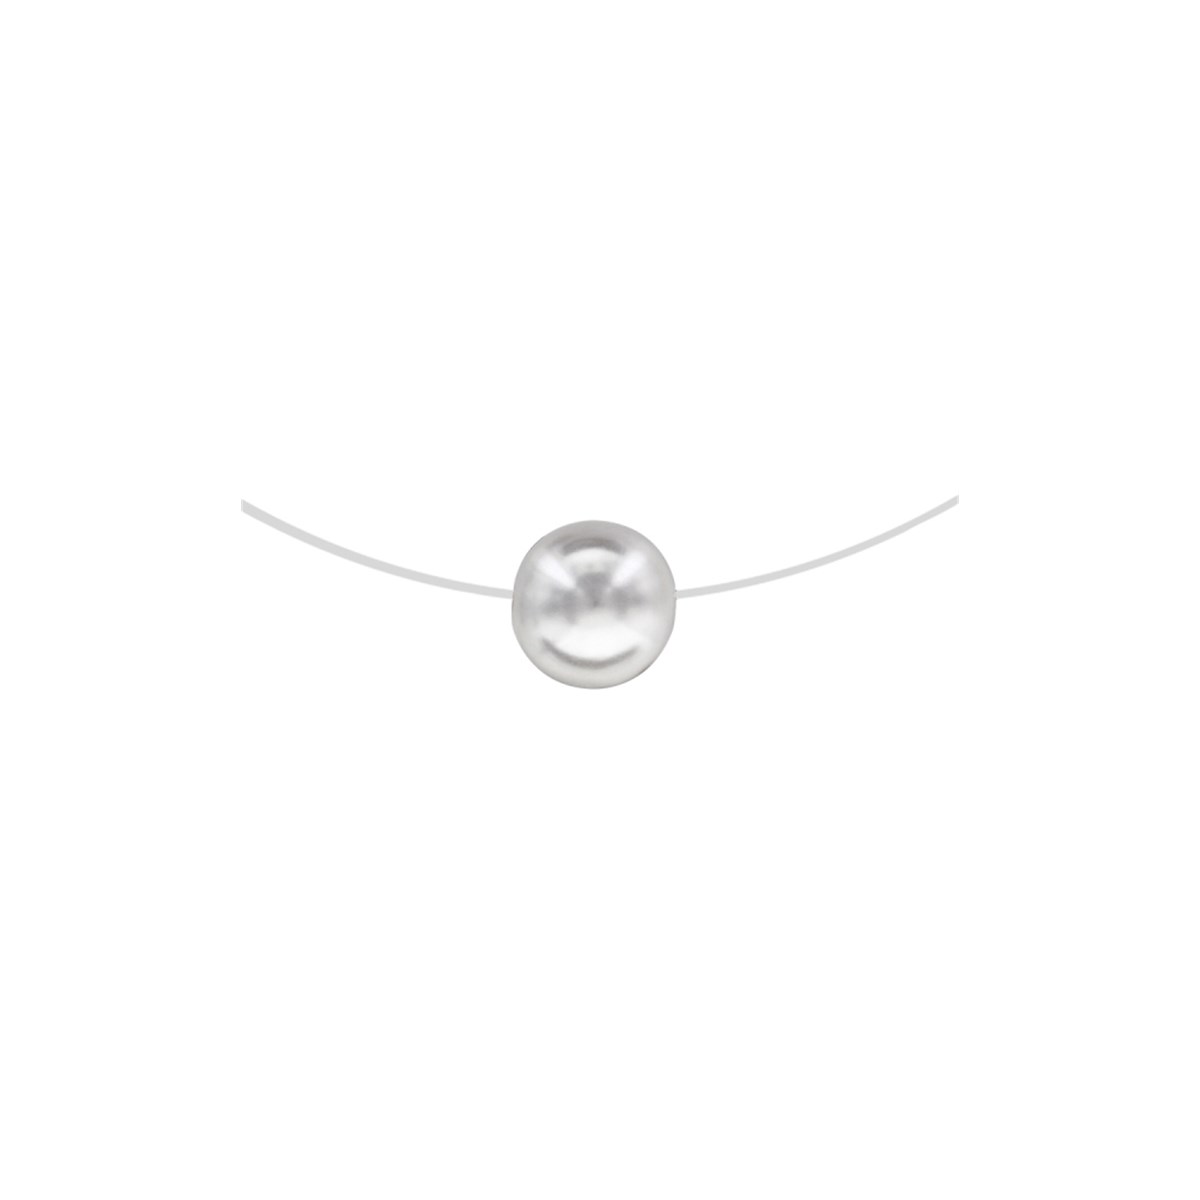 Collier fil nylon - Perle blanche - 10mm